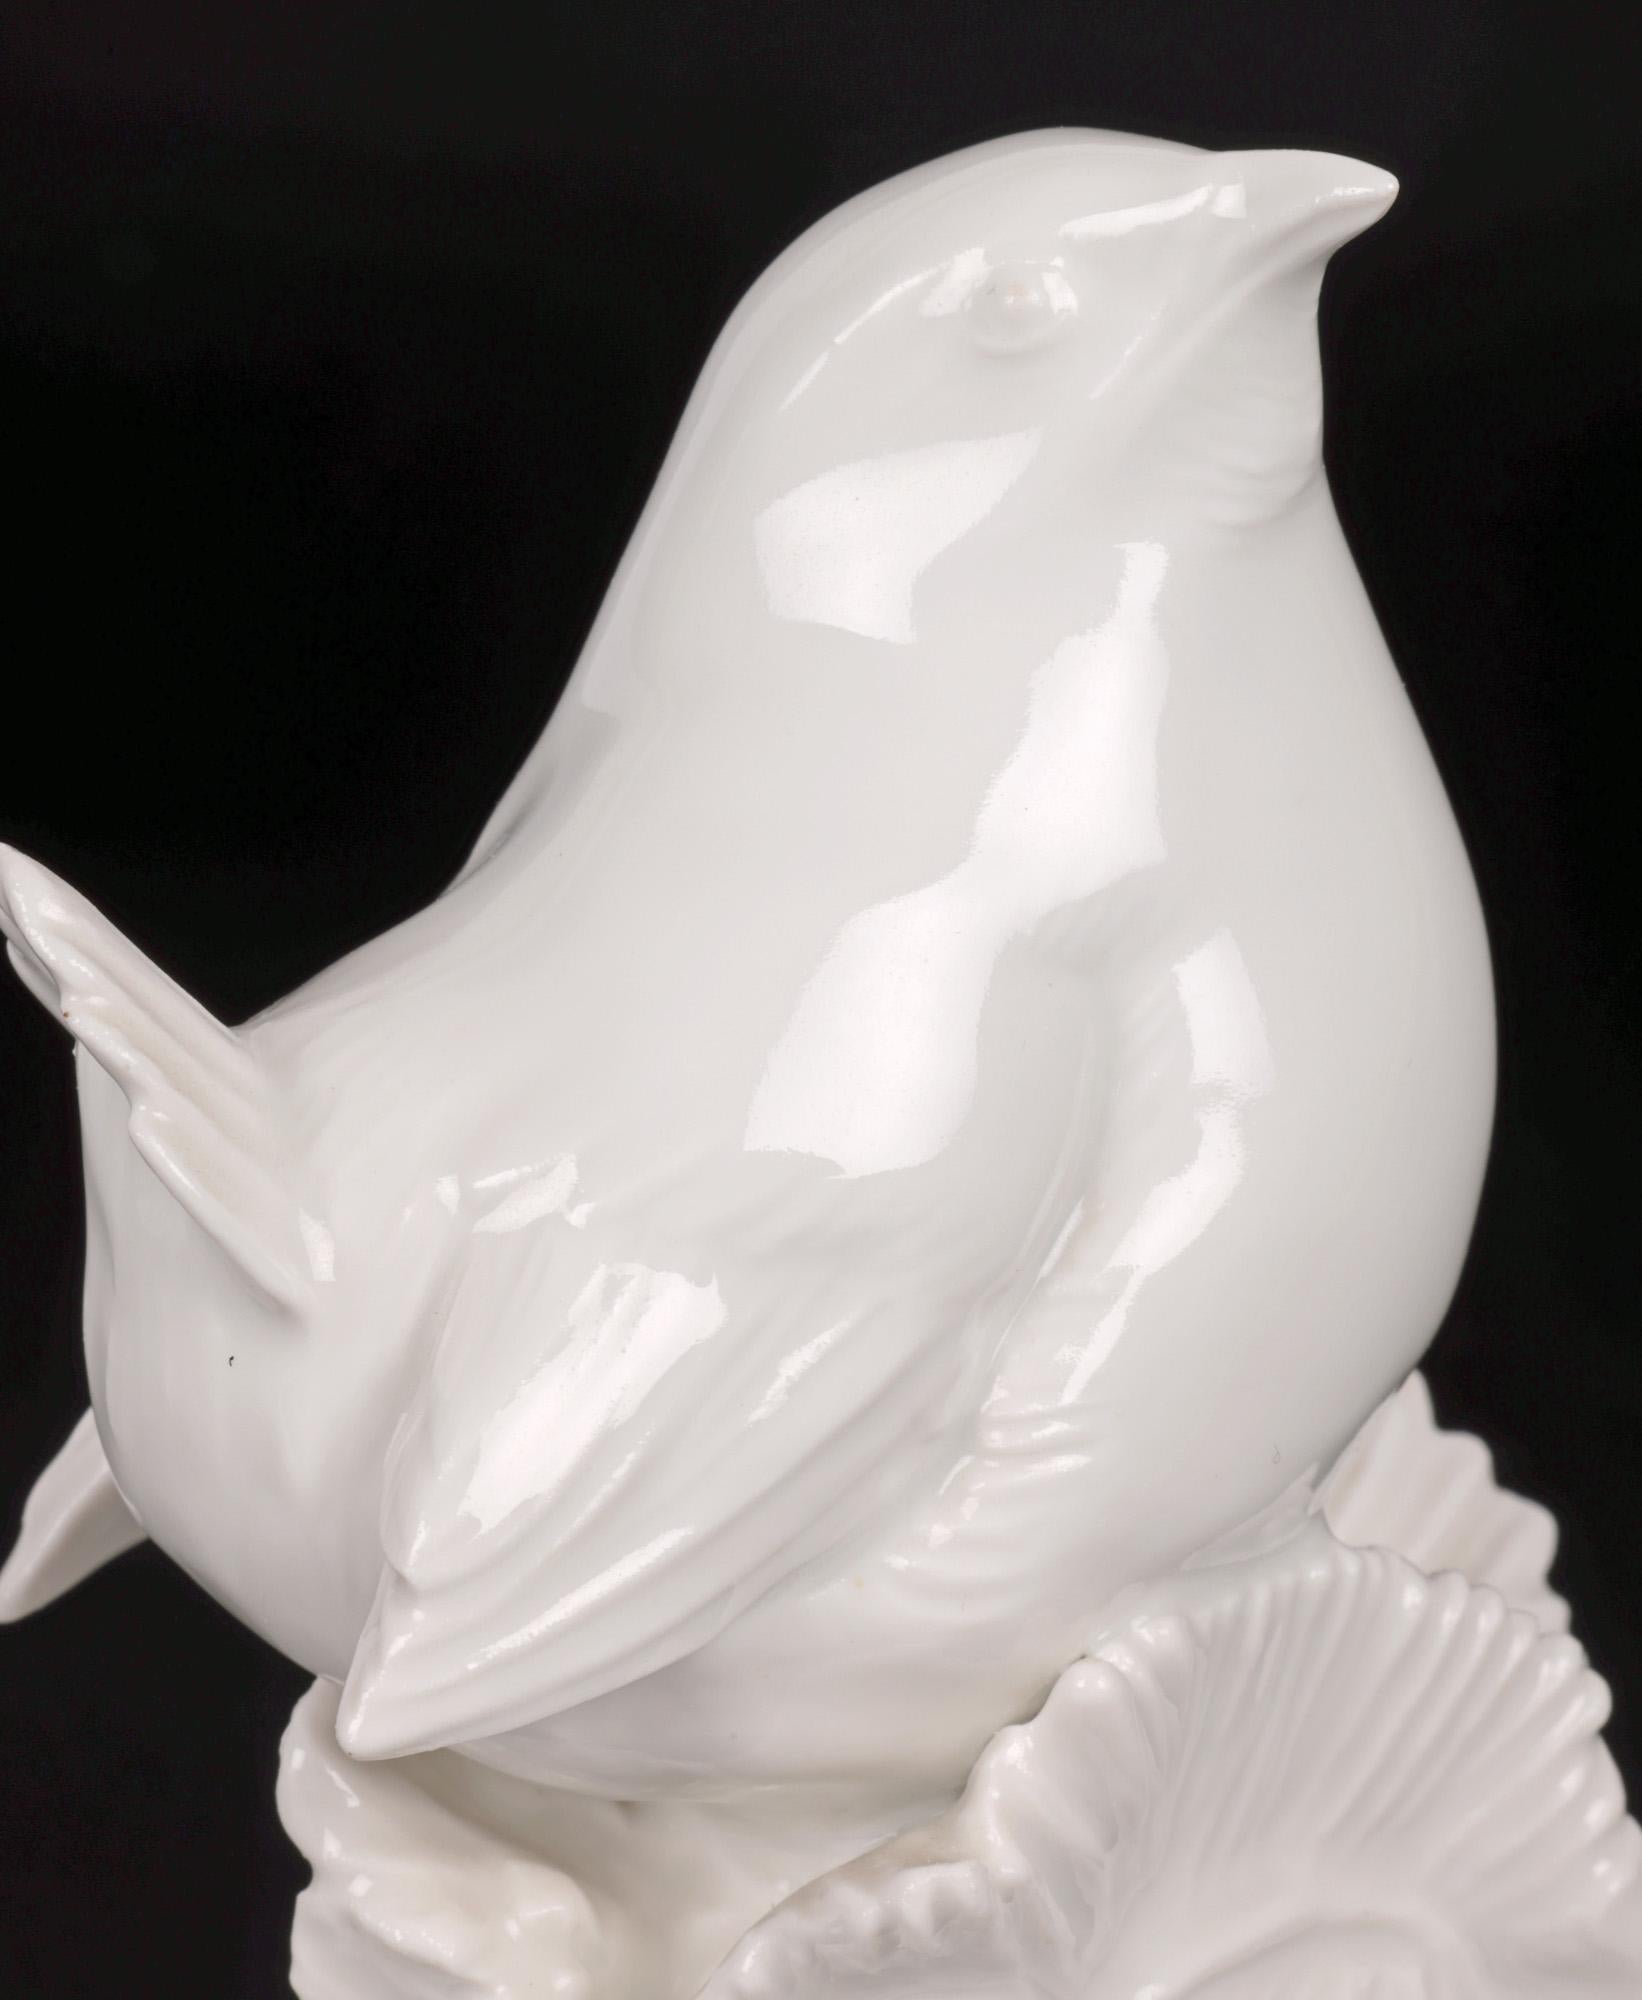 Aus einer Sammlung von weißen und blanc de chine-Figuren bieten wir diese feine deutsche Porzellanfigur eines Gartenvogels aus dem 20. Jahrhundert an. Die qualitätsvolle Figur aus dem Meissener Weiss-Sortiment stellt einen Gartenvogel,